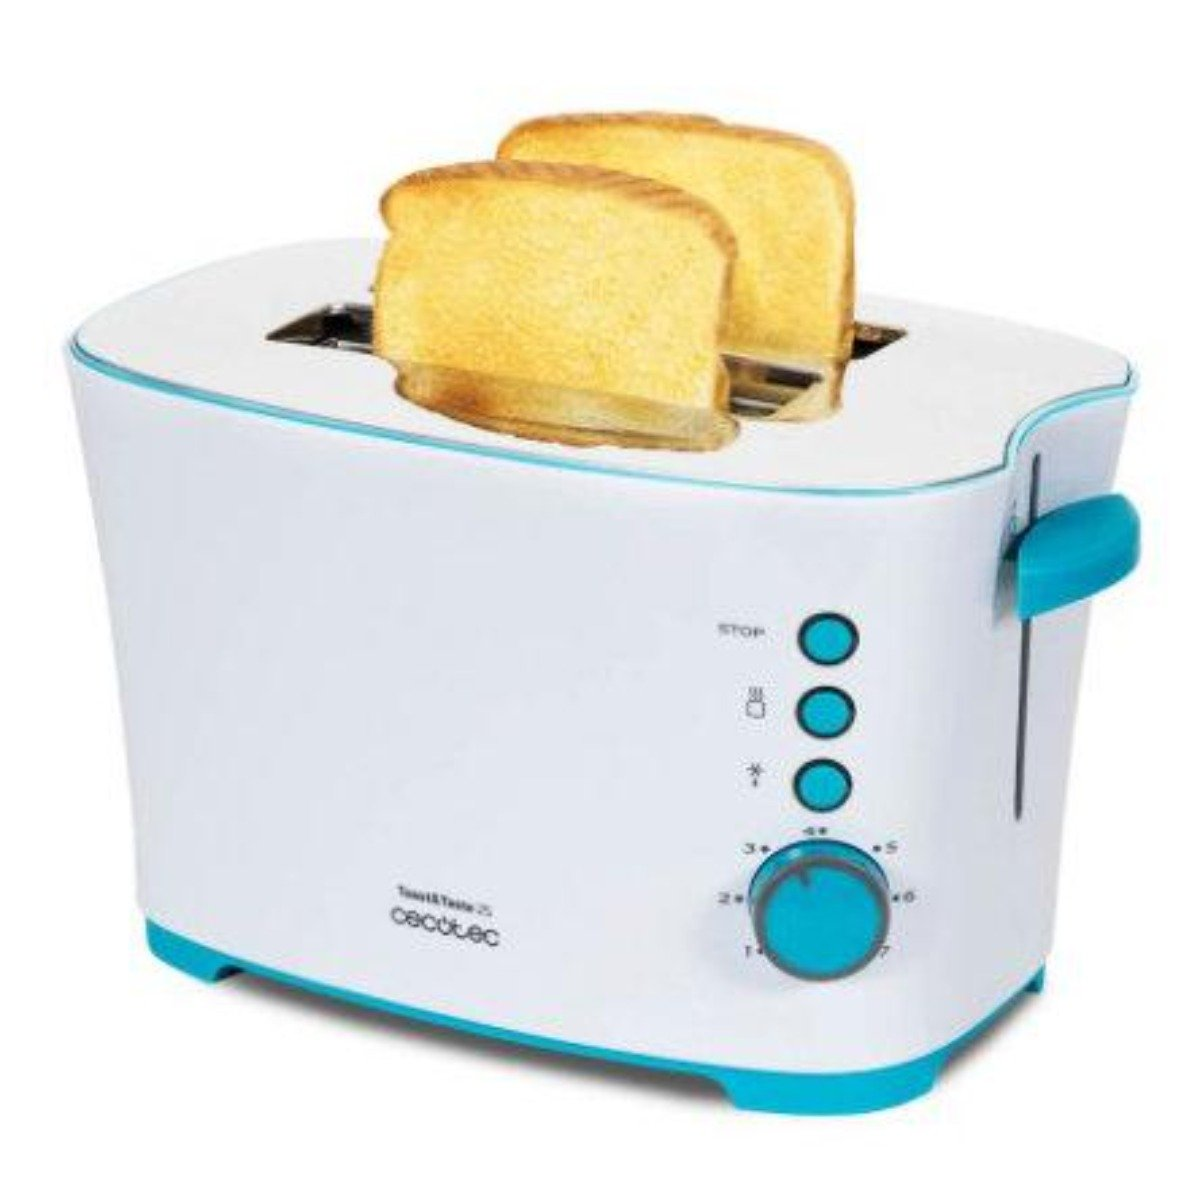 CECOTEC Taste Schlitze: 2) Weiß 3027 2S Toaster (850 Watt